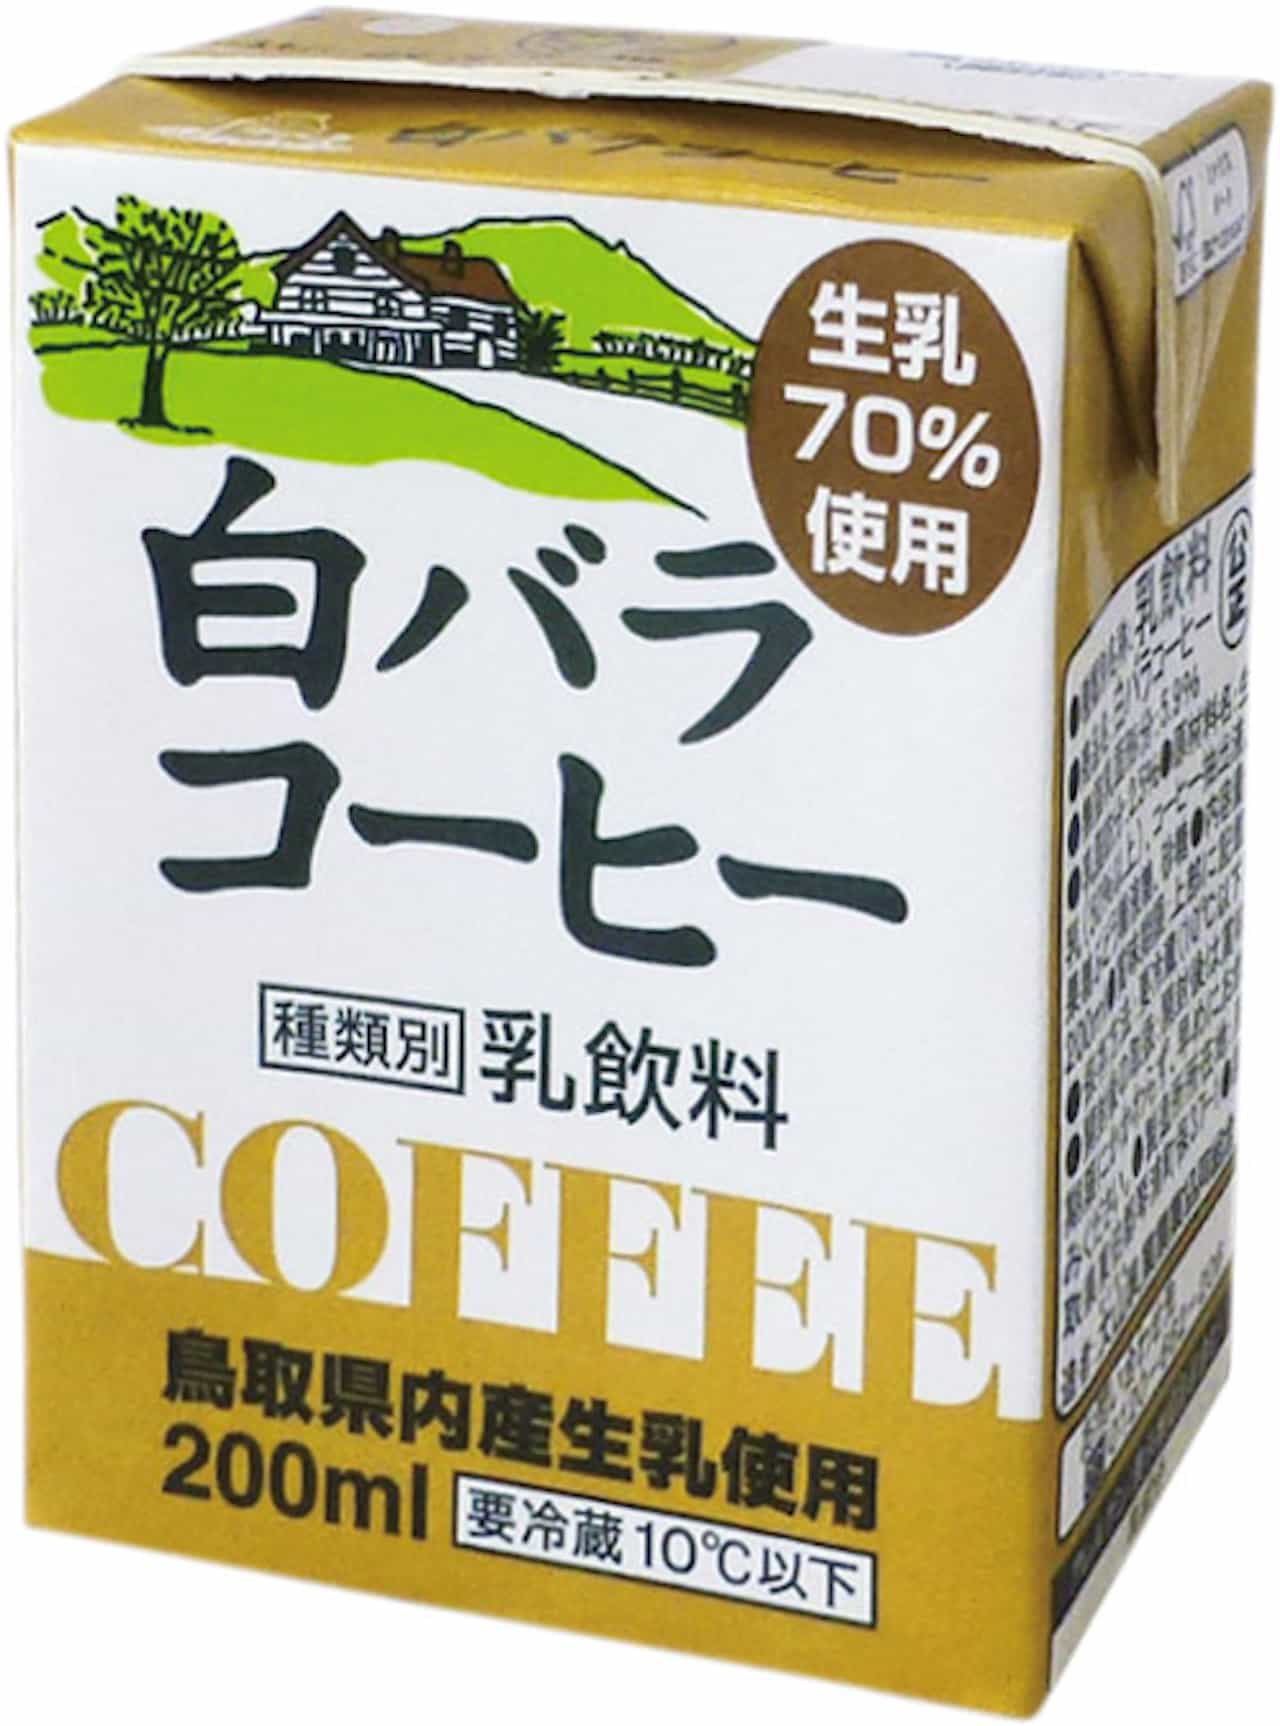 白バラコーヒー（200ml）